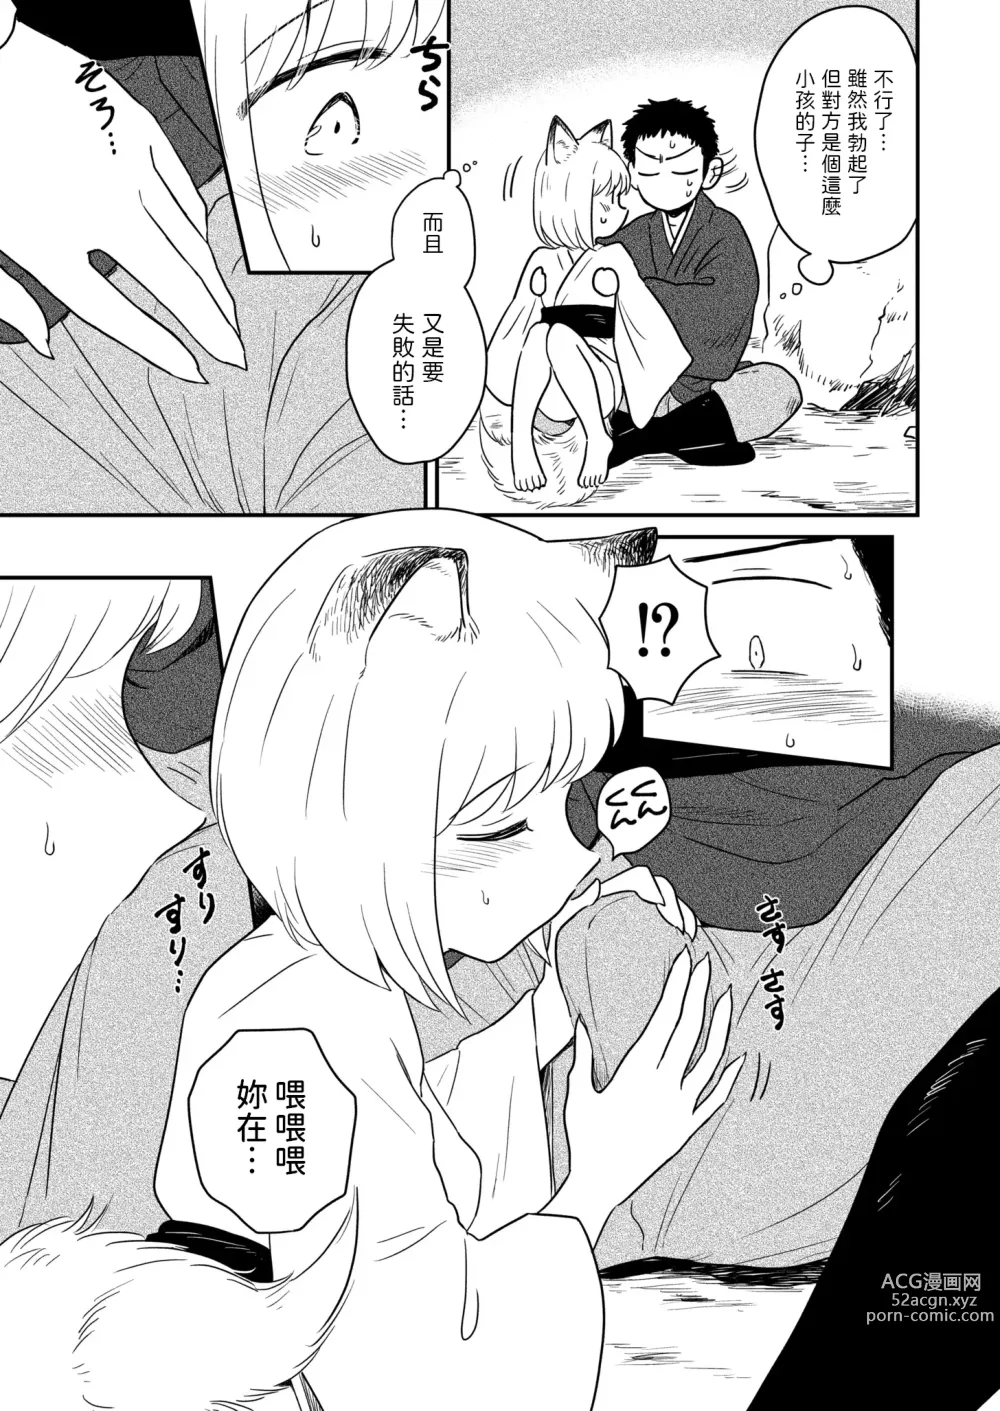 Page 9 of manga Kitsune